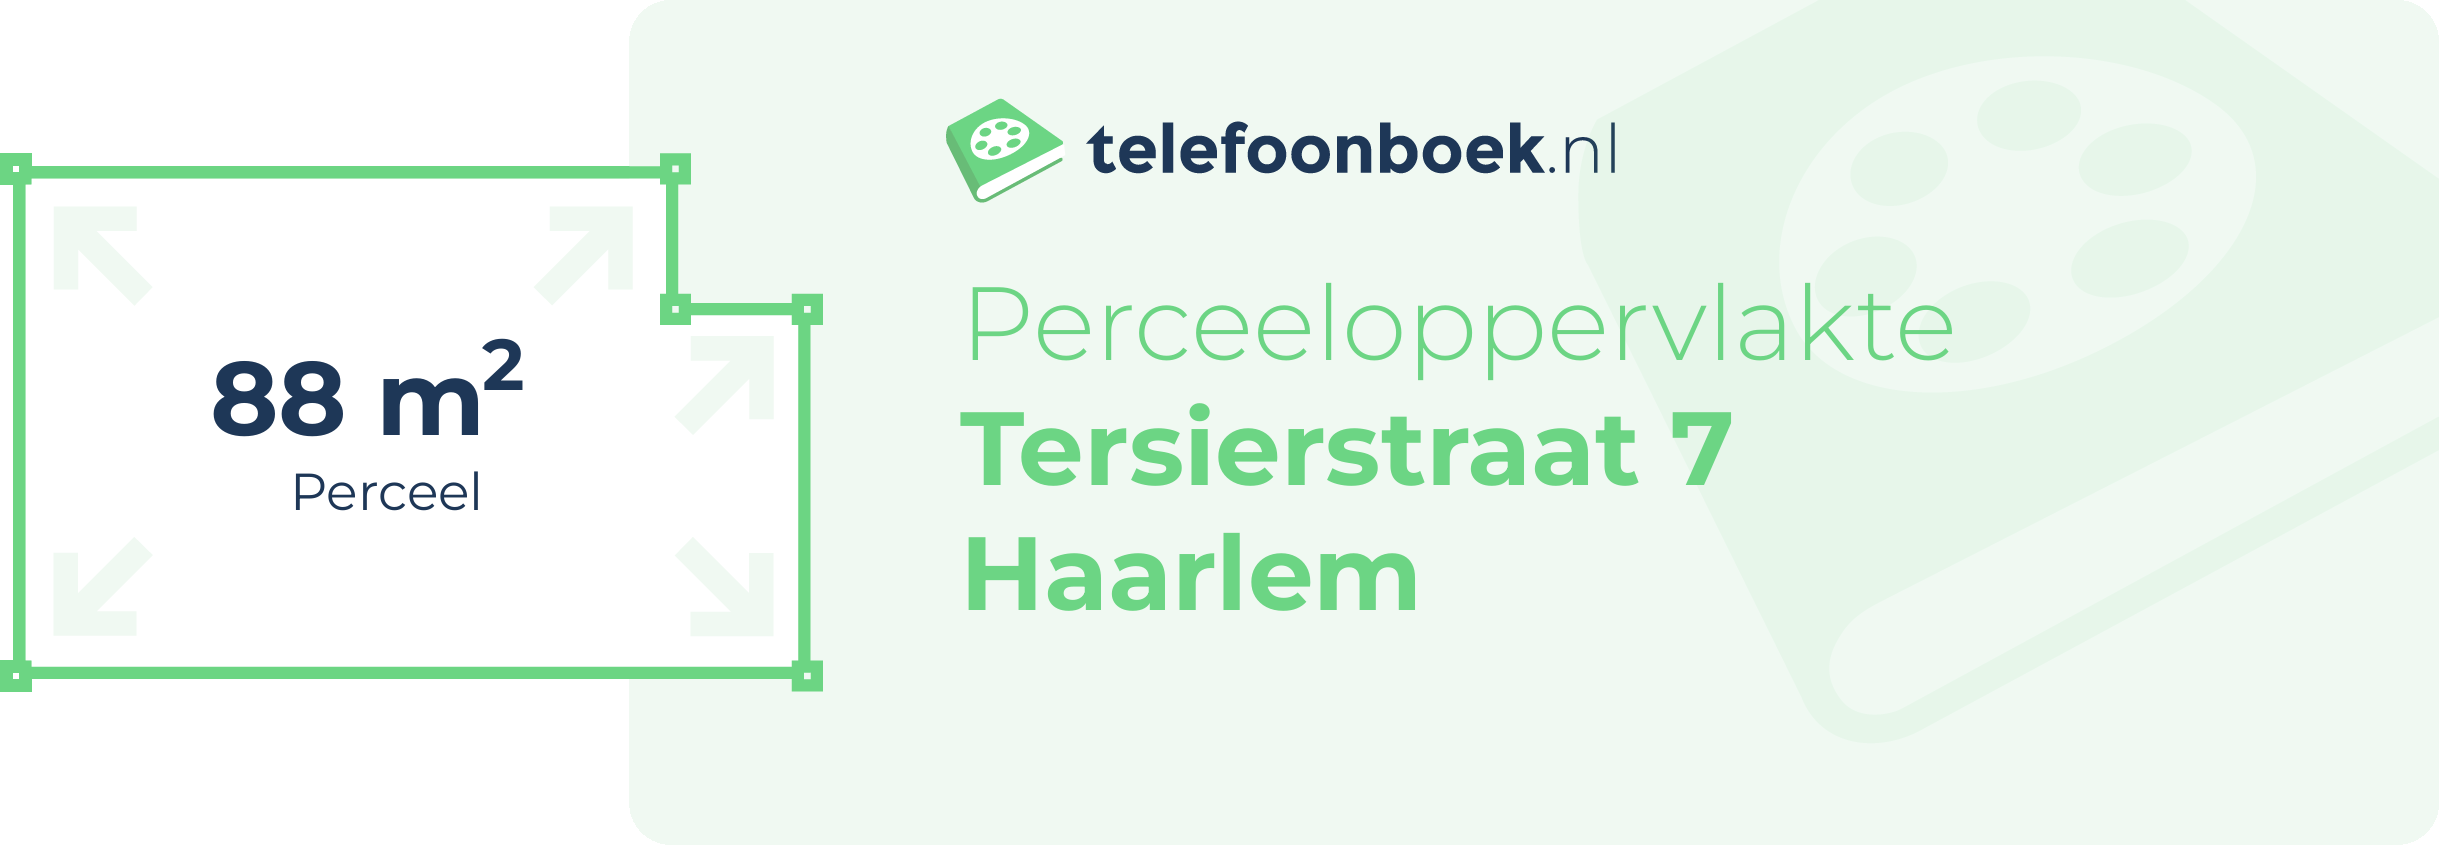 Perceeloppervlakte Tersierstraat 7 Haarlem